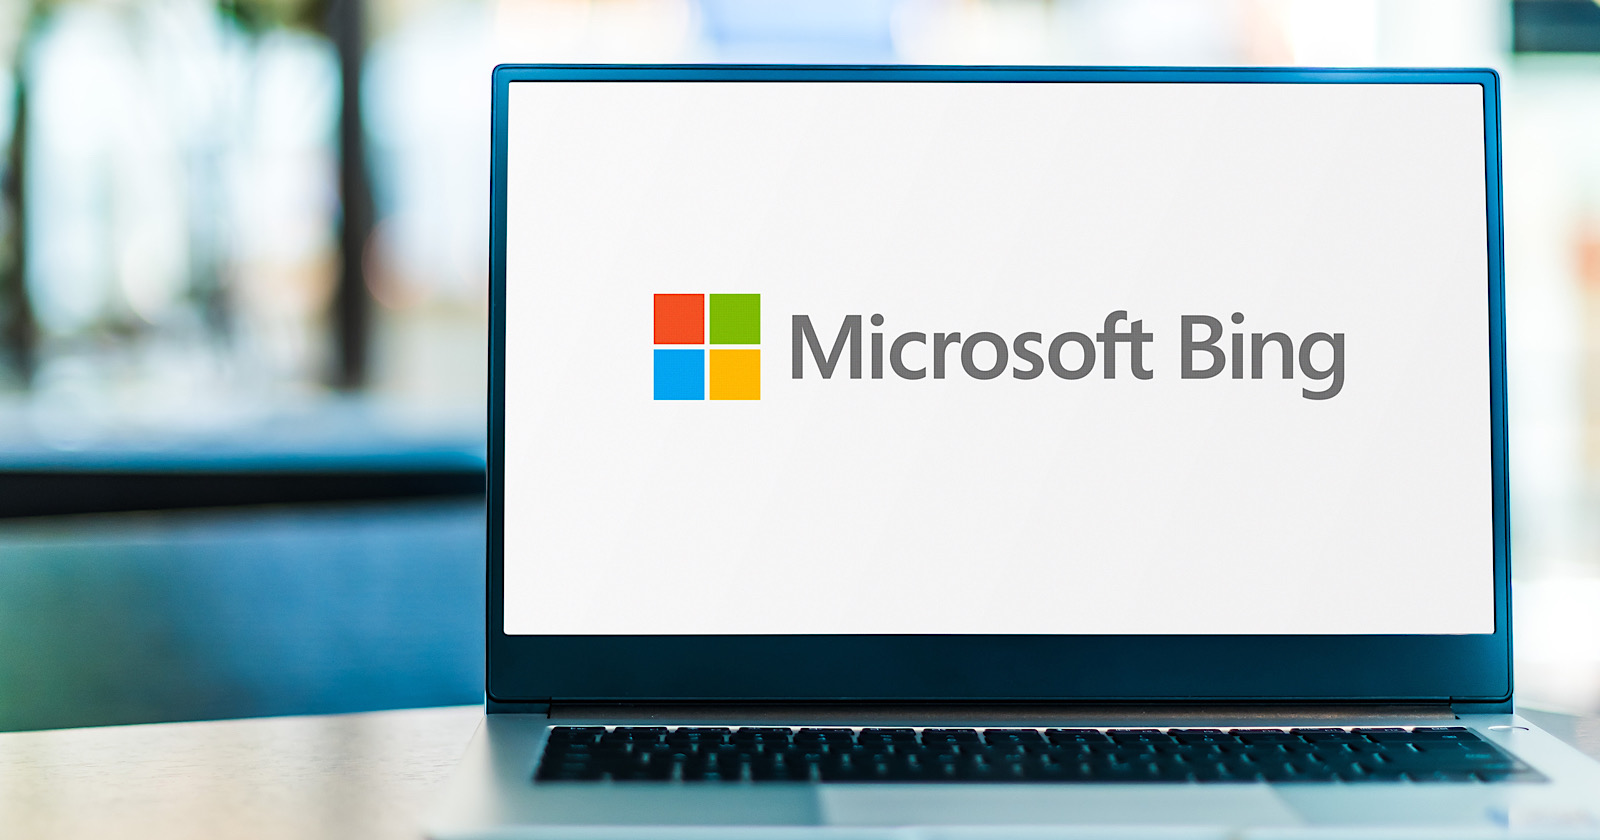 Hóa Ra Microsoft Đã Biết Về “Thái Độ Lồi Lõm” Của Bing Chat Từ Nhiều Tháng  Trước Khi Ra Mắt Người Dùng